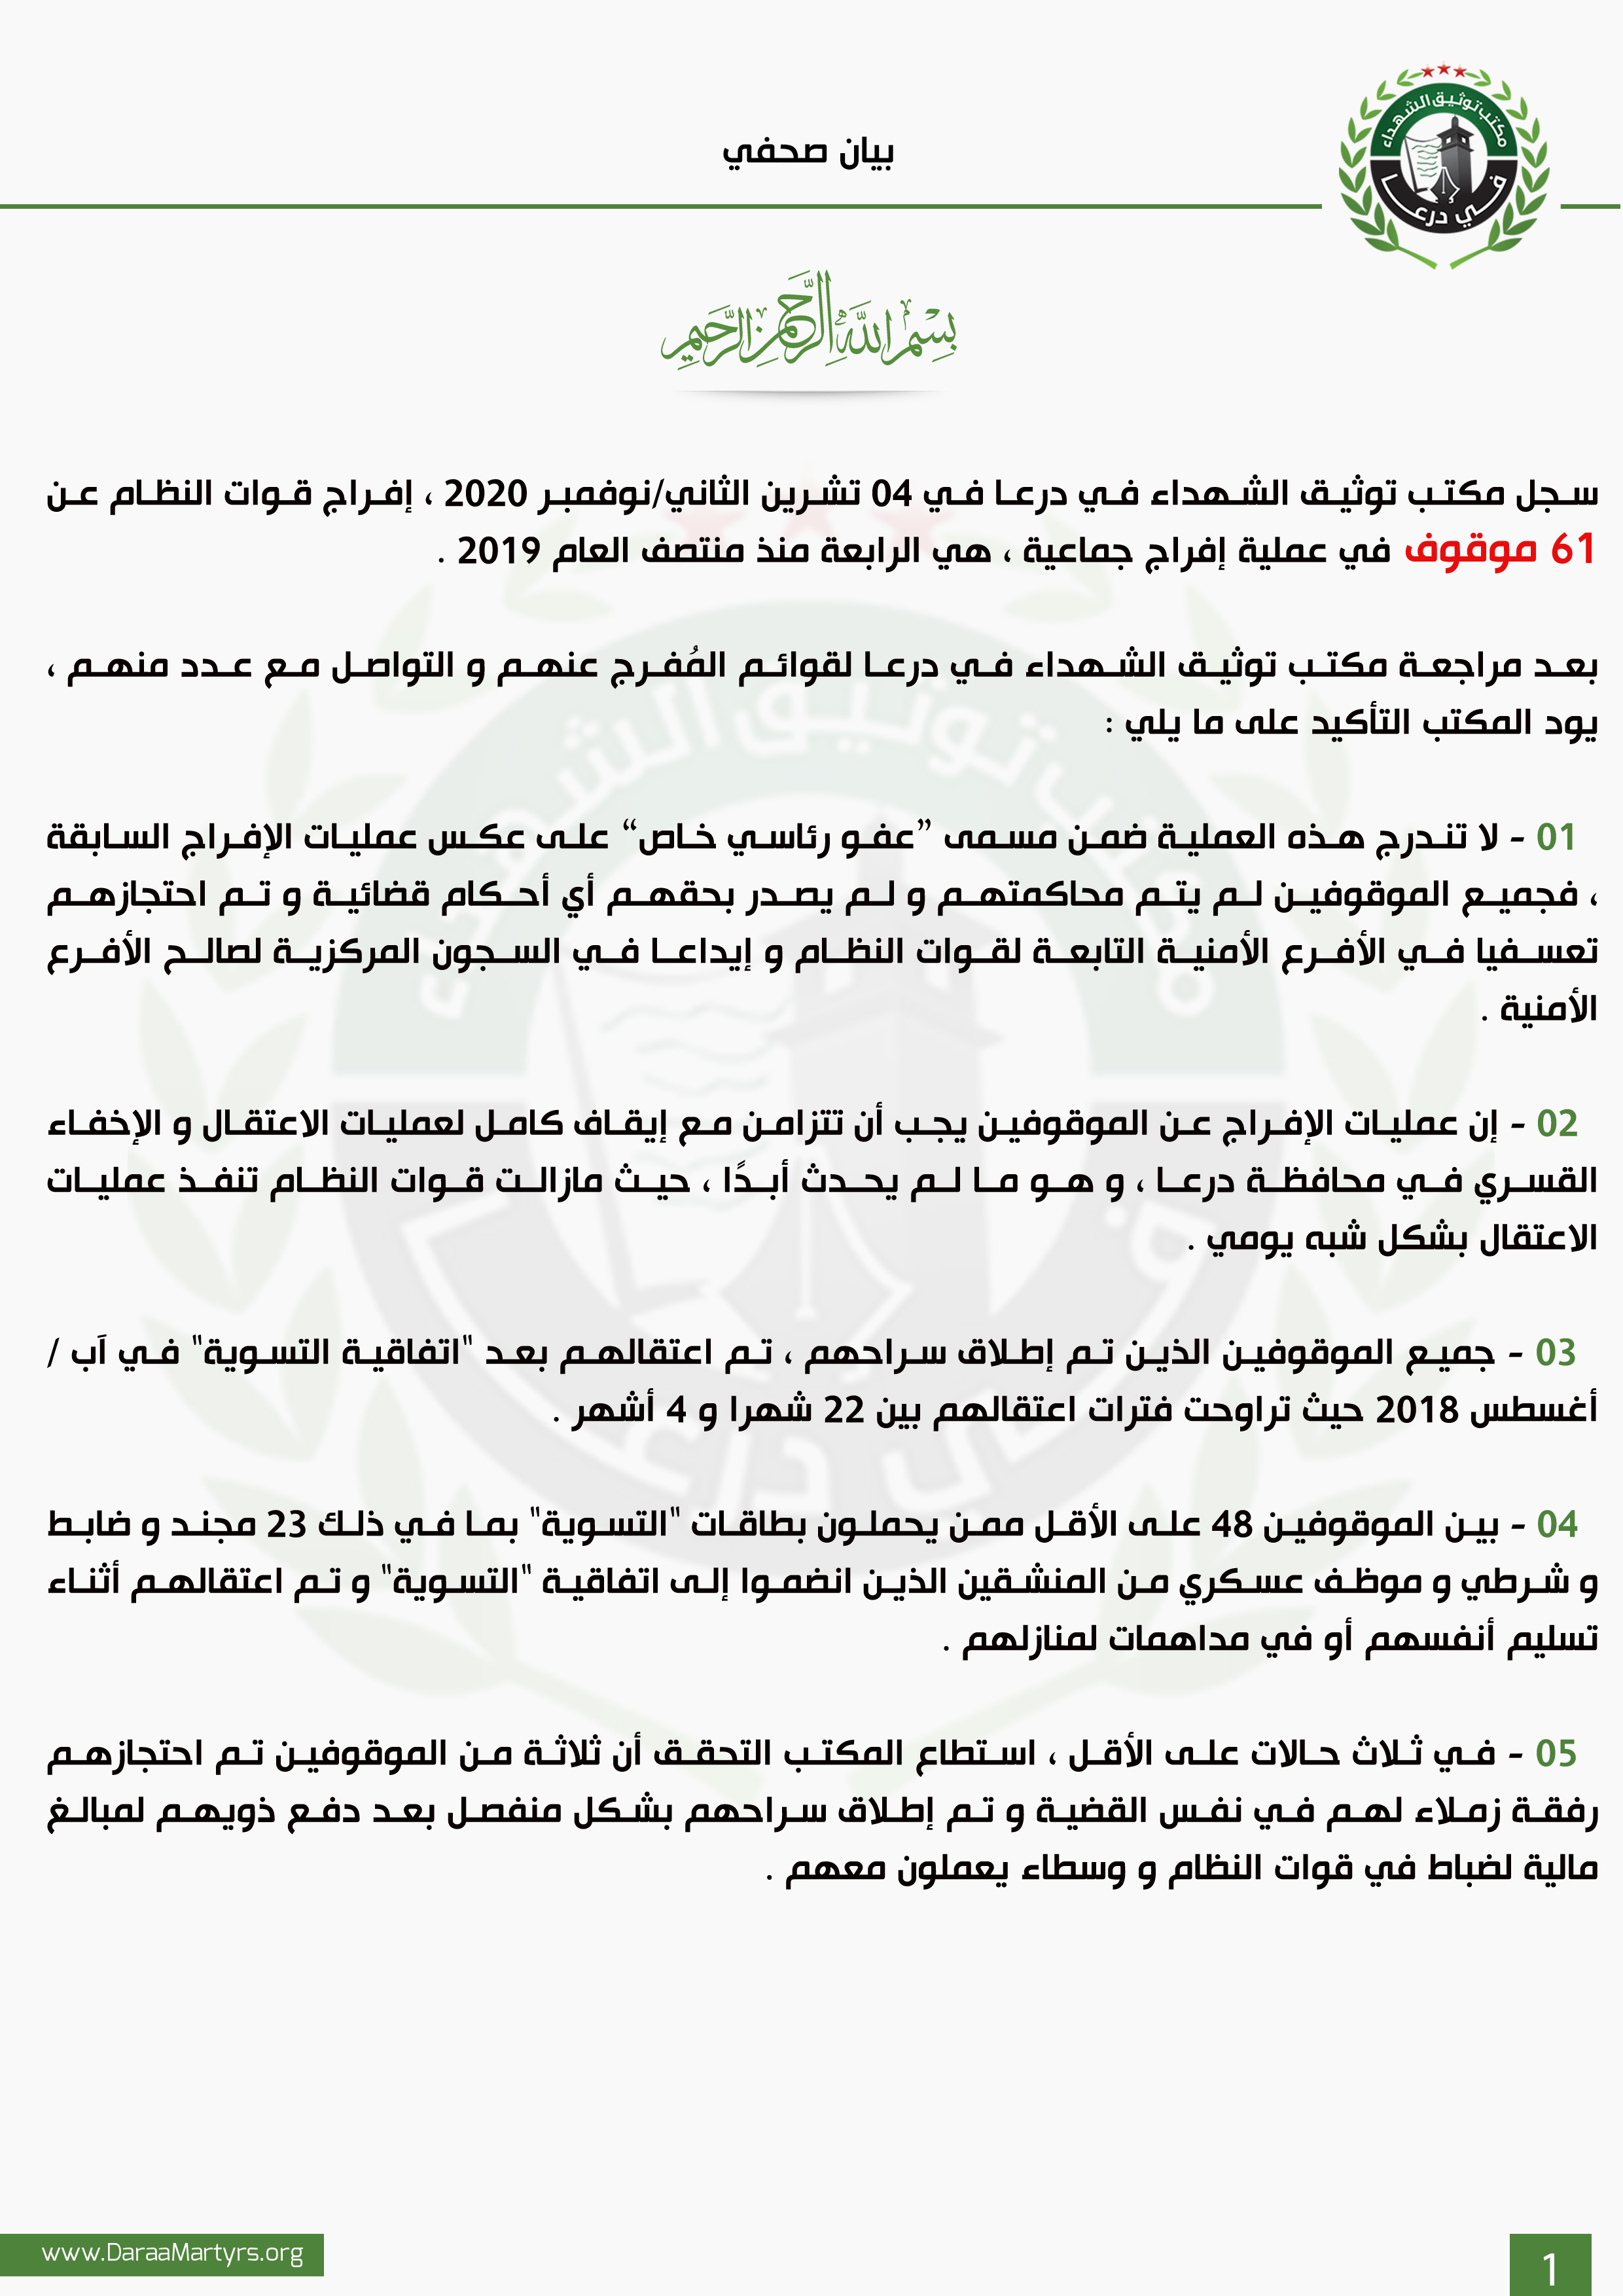 بيان صحفي – توضيح حول إفراج قوات النظام عن عدد من الموقوفين – مكتب توثيق  الشهداء في درعا | Daraa Martyrs Documentation Office